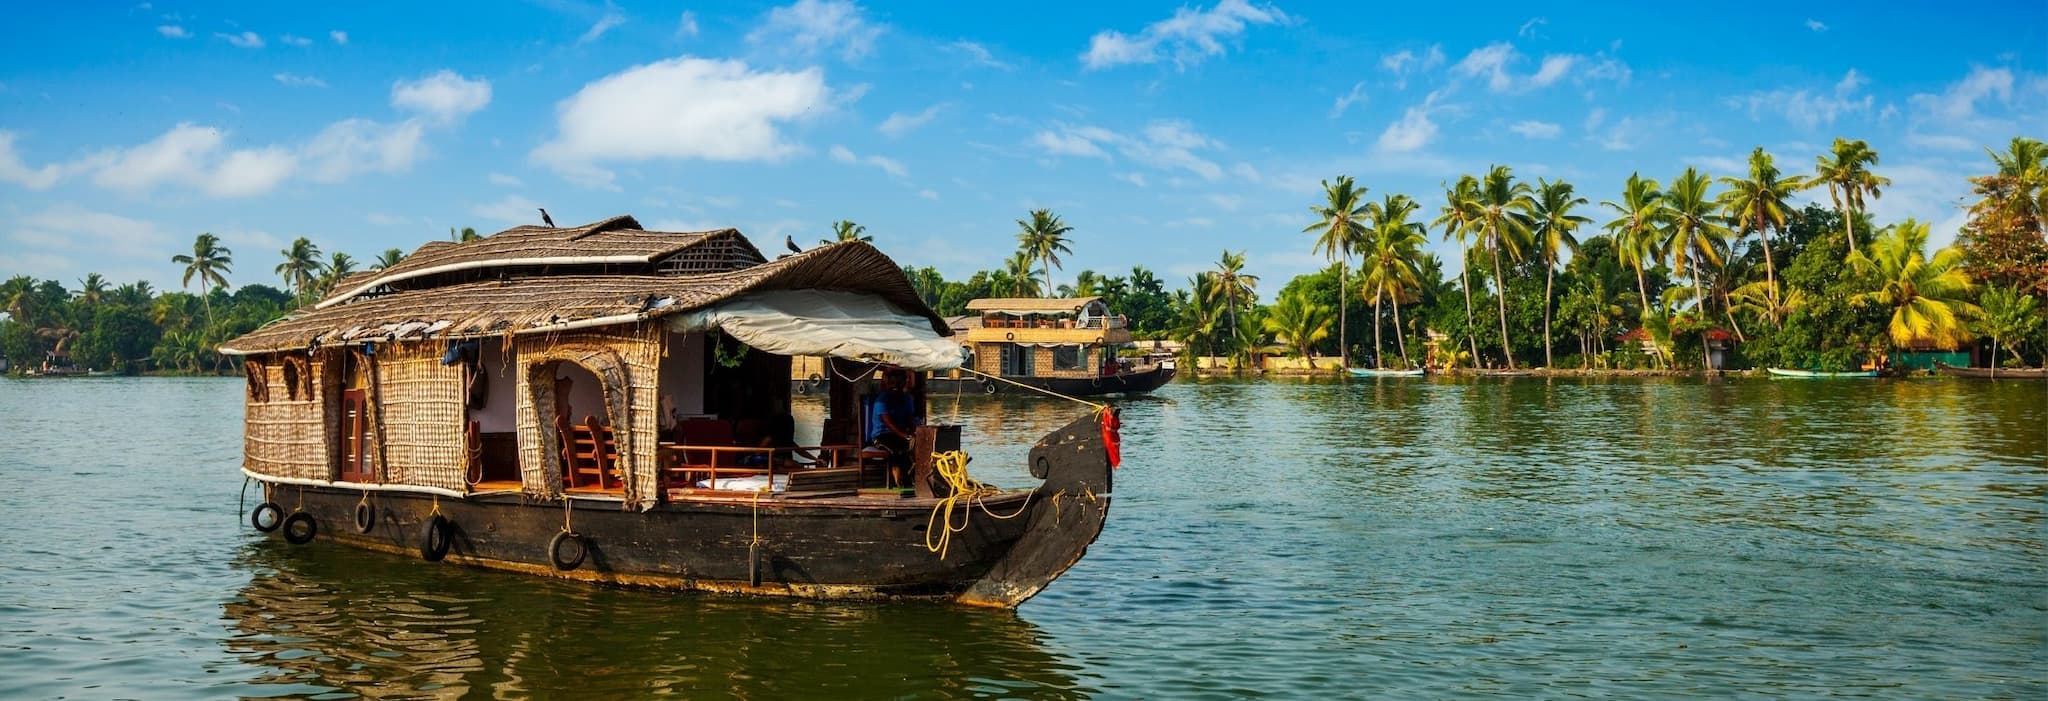 5 reasons to visit Kerala now